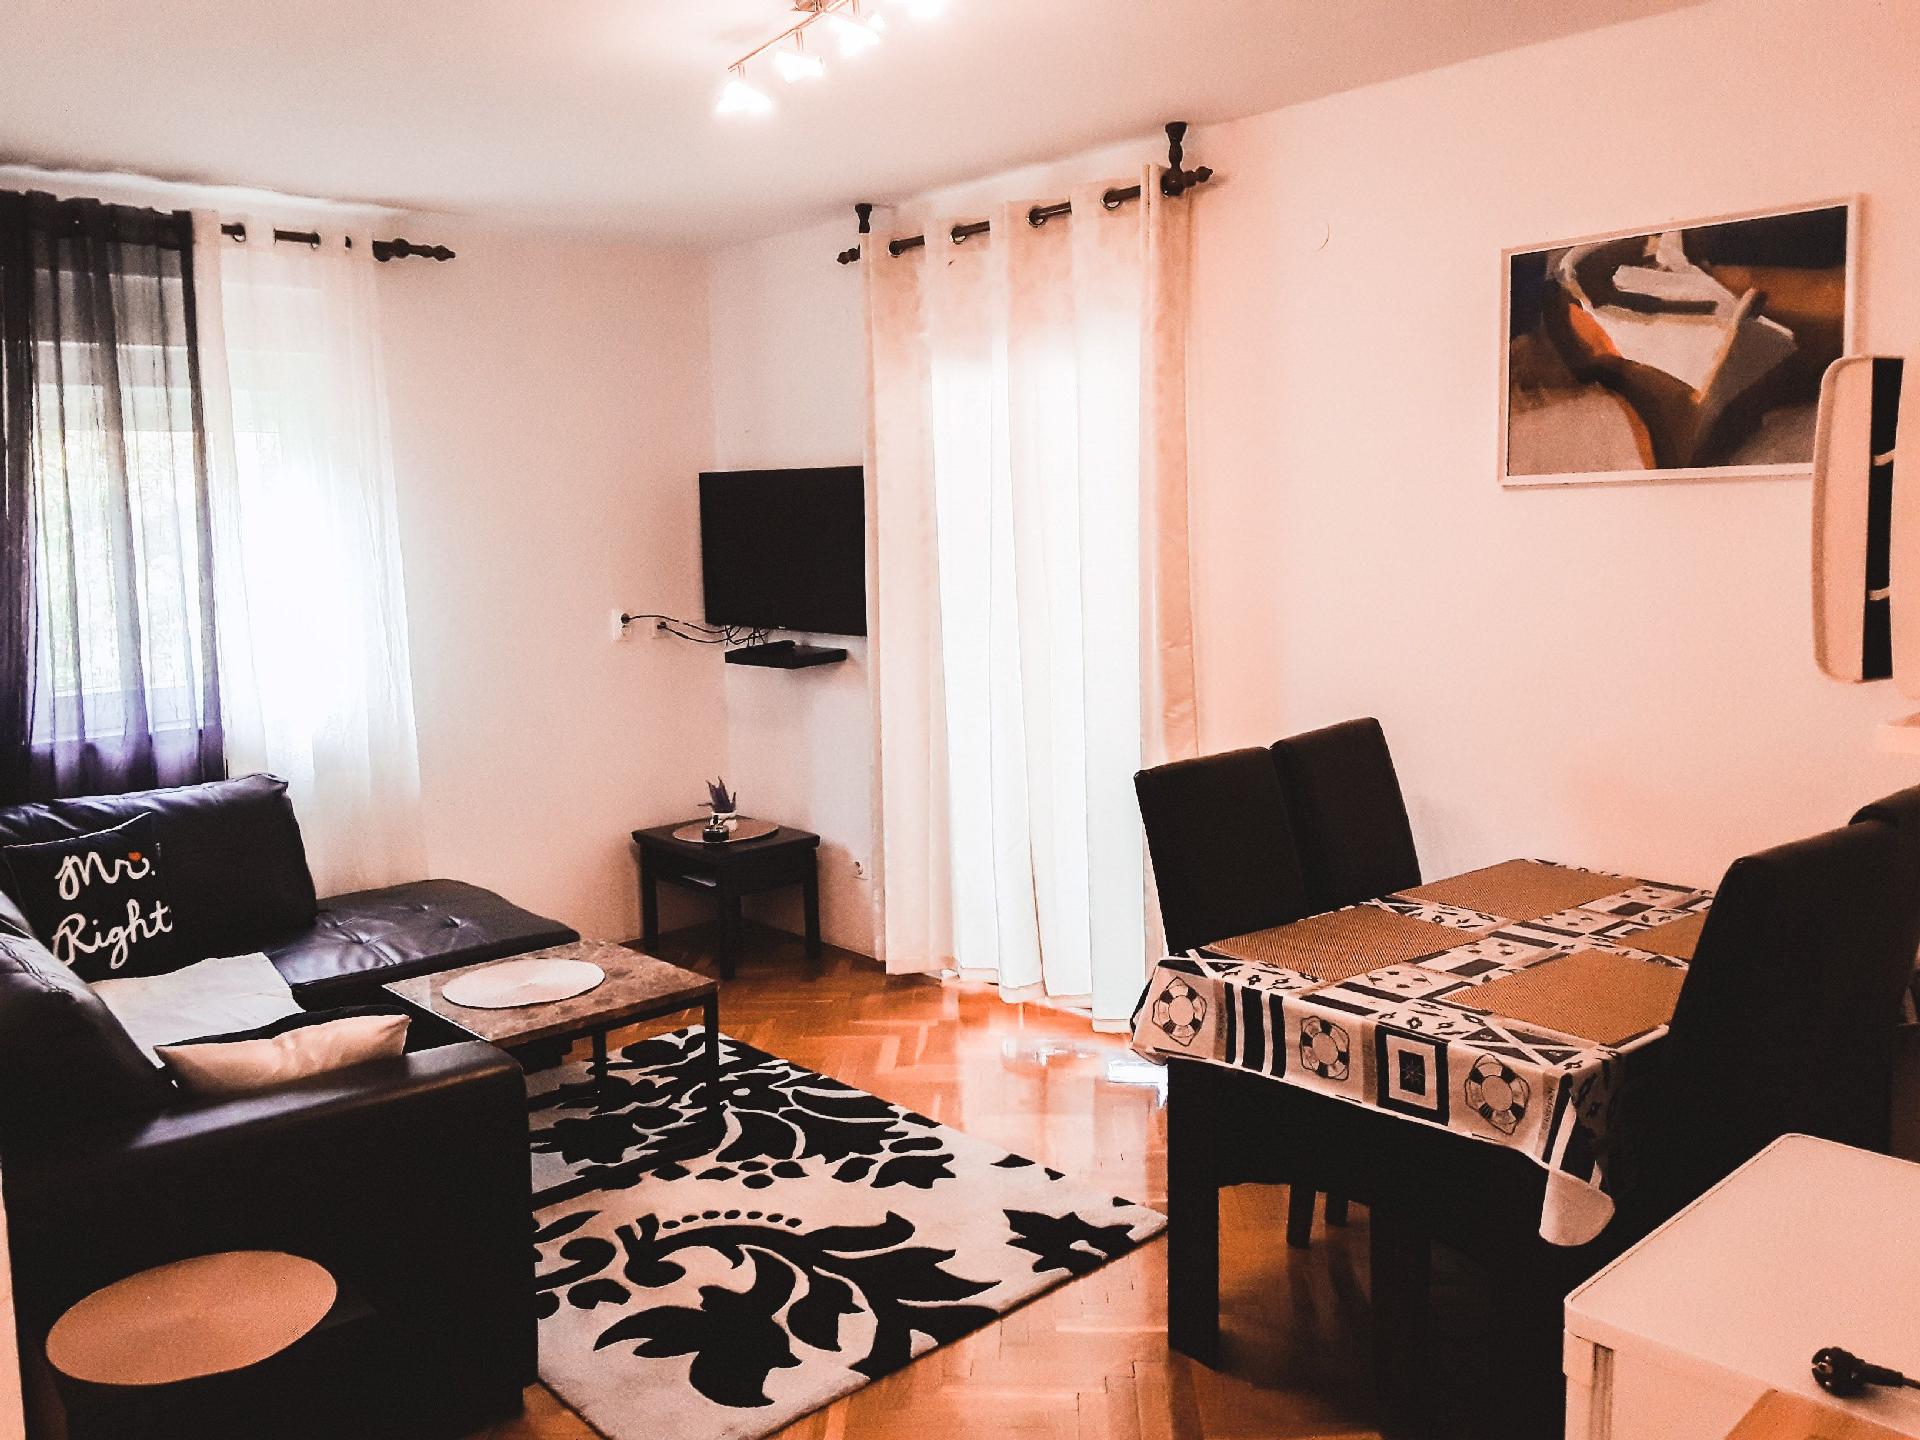 Ferienwohnung für 3 Personen ca. 36 m² i Ferienwohnung in Kroatien